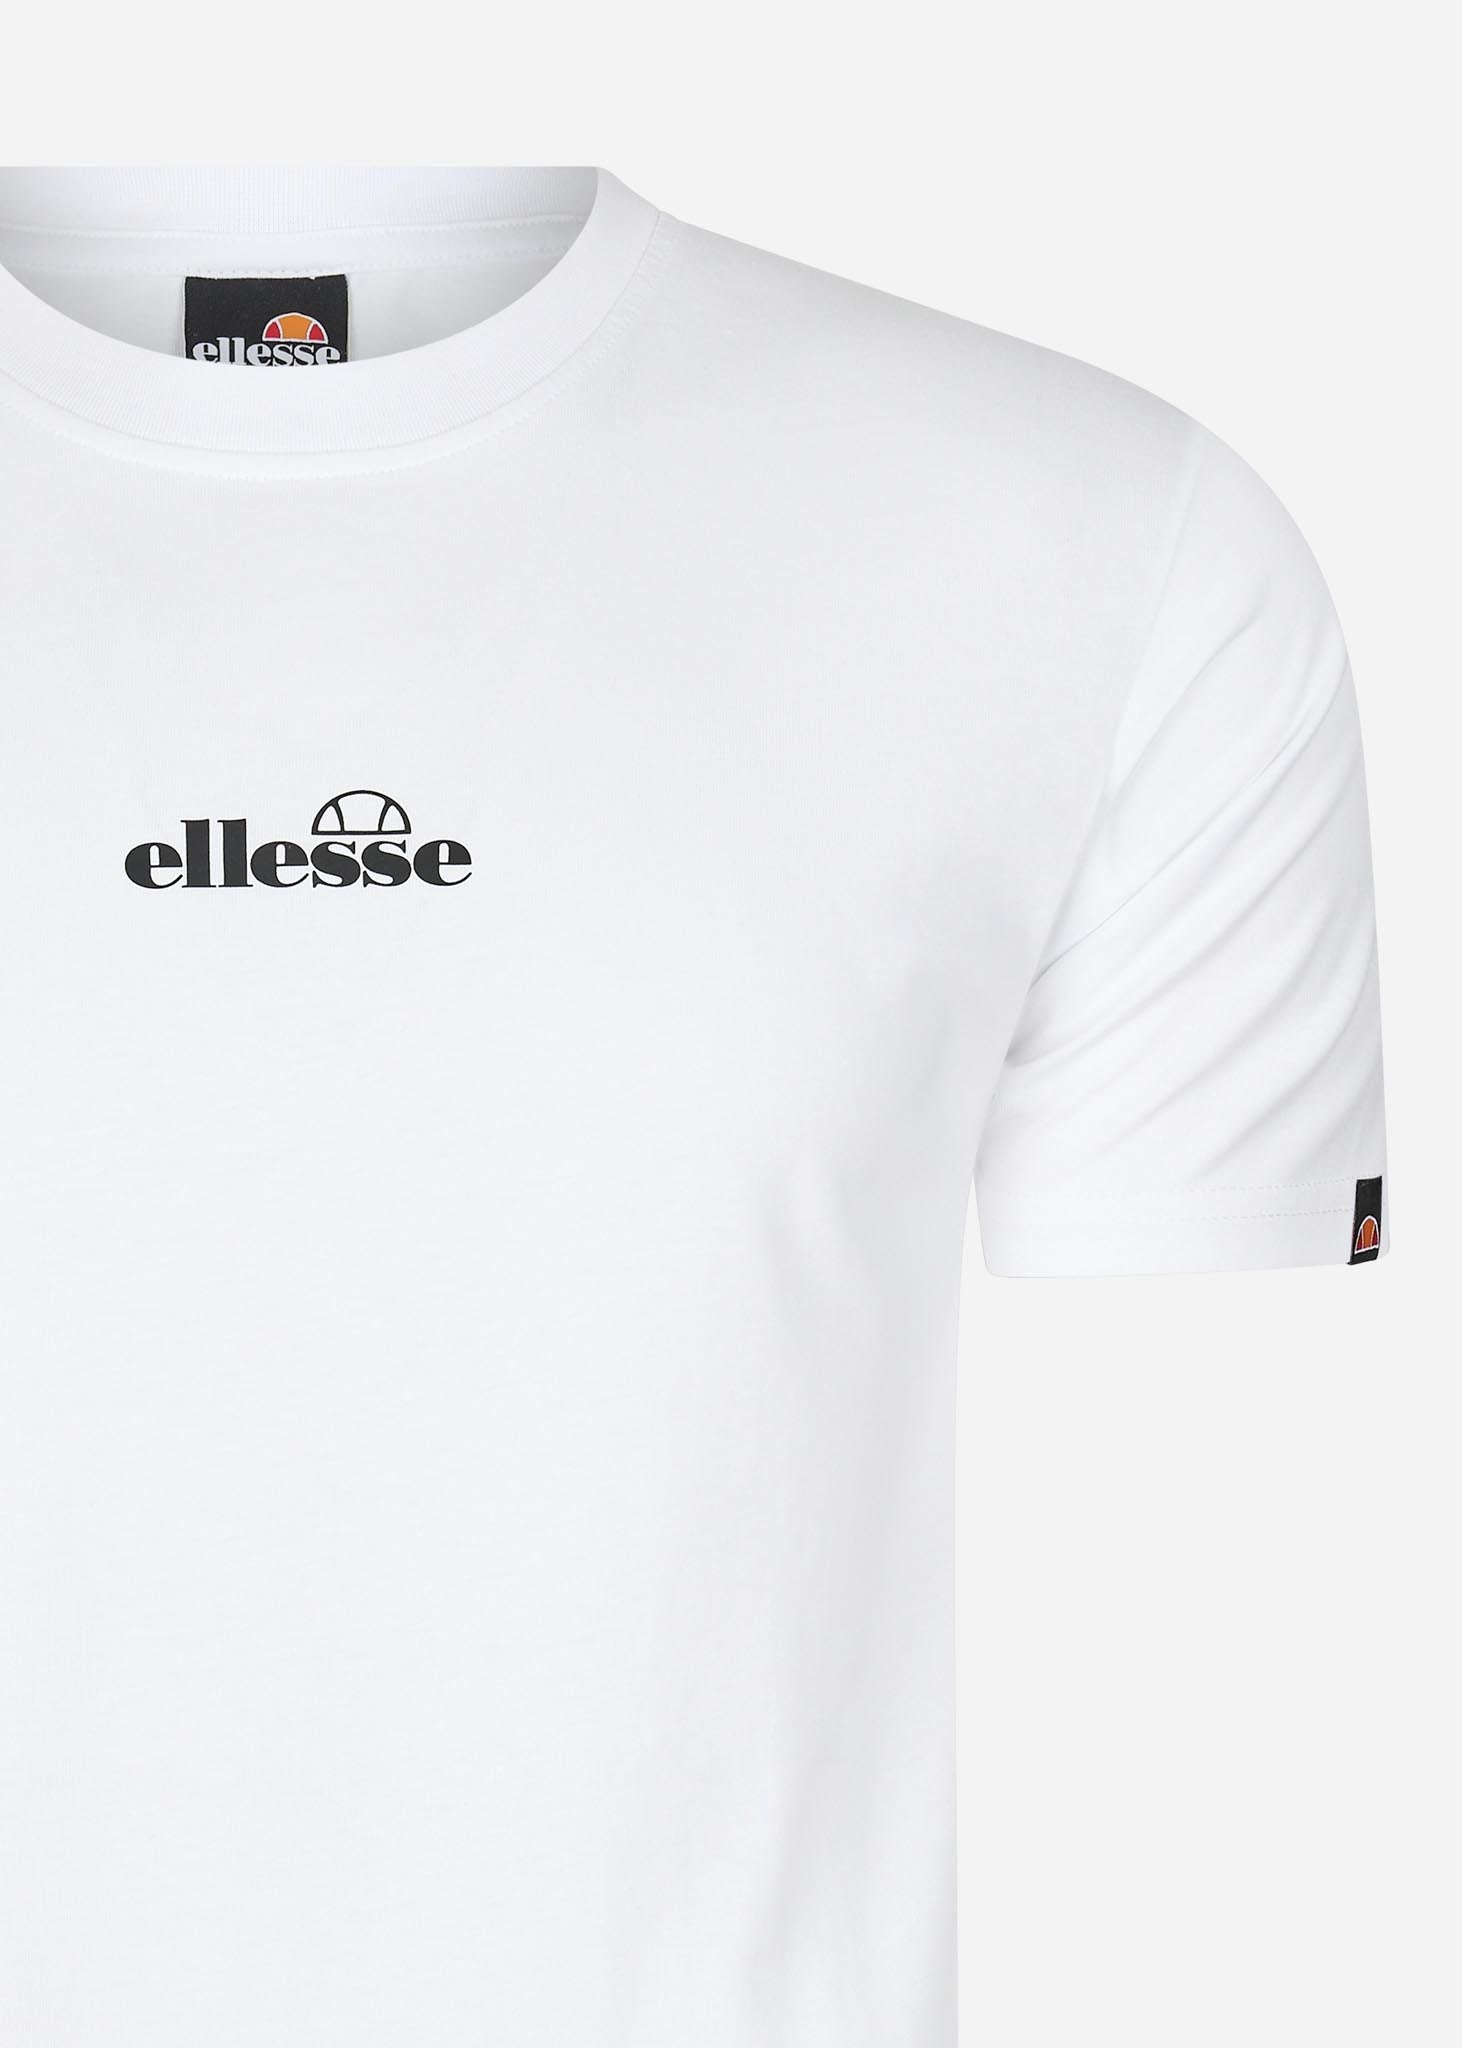 ellesse t-shirt wit logo midden klein